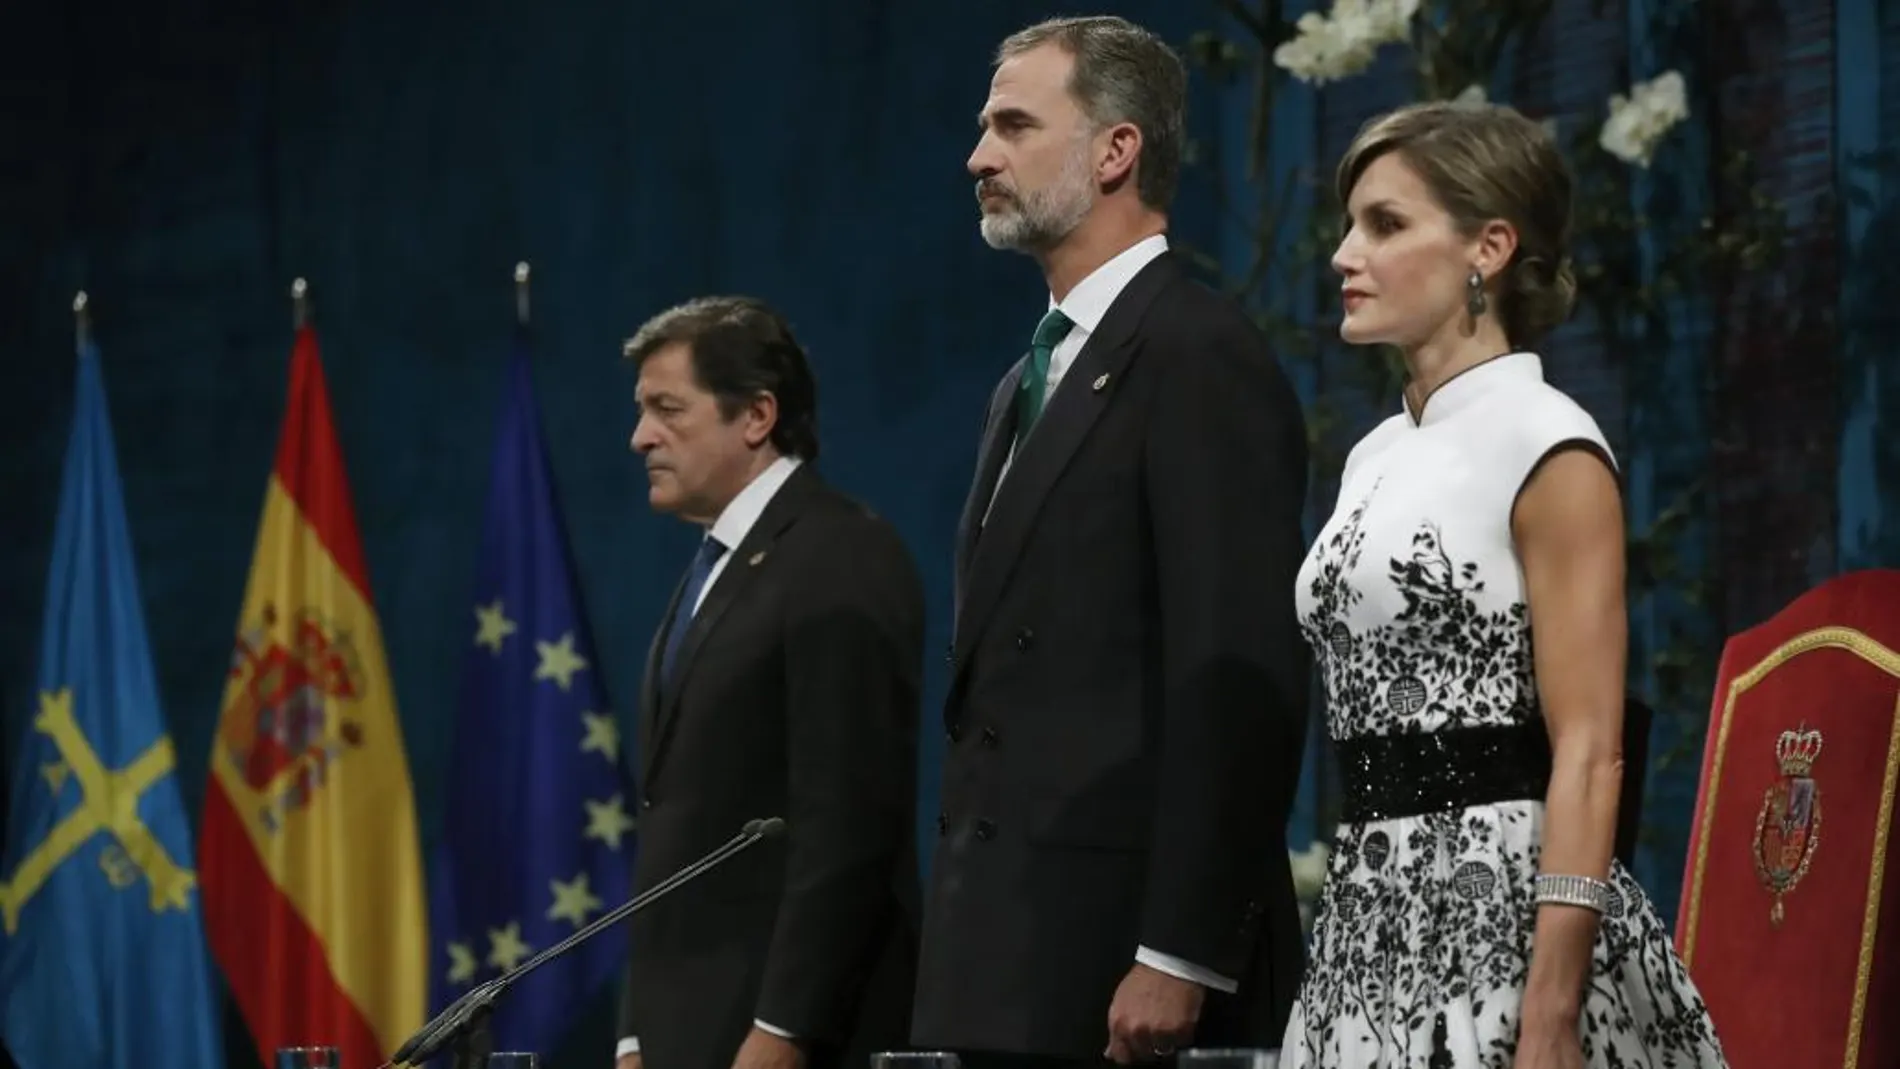 Los Reyes junto al jefe del Ejecutivo asturiano, Javier Fernández, al inicio de la ceremonia/Efe